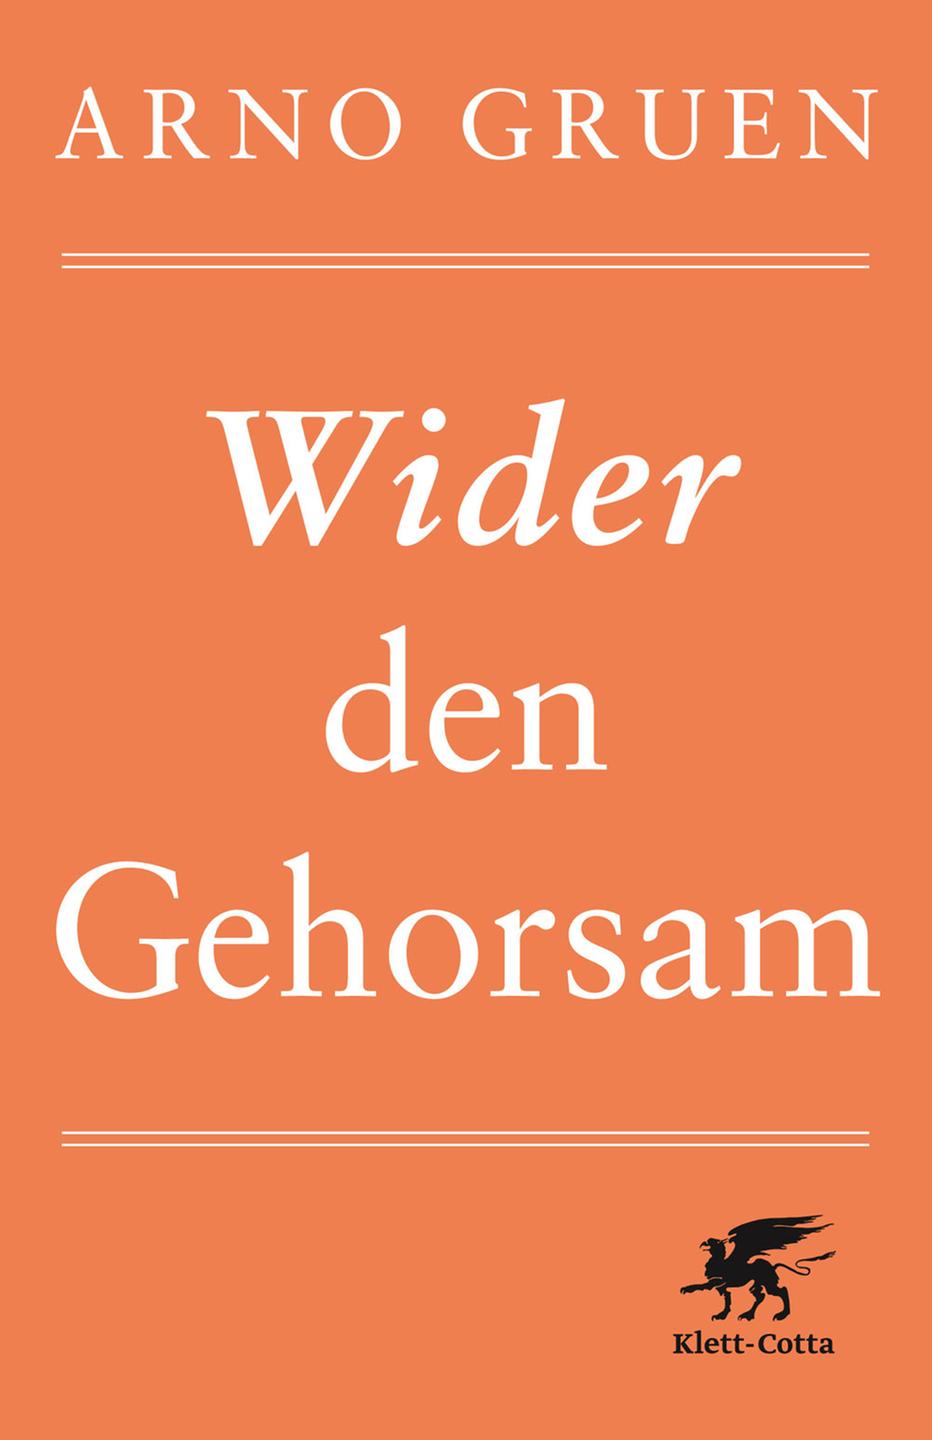 Buchcover: "Wider den Gehorsam" von Arno Gruen